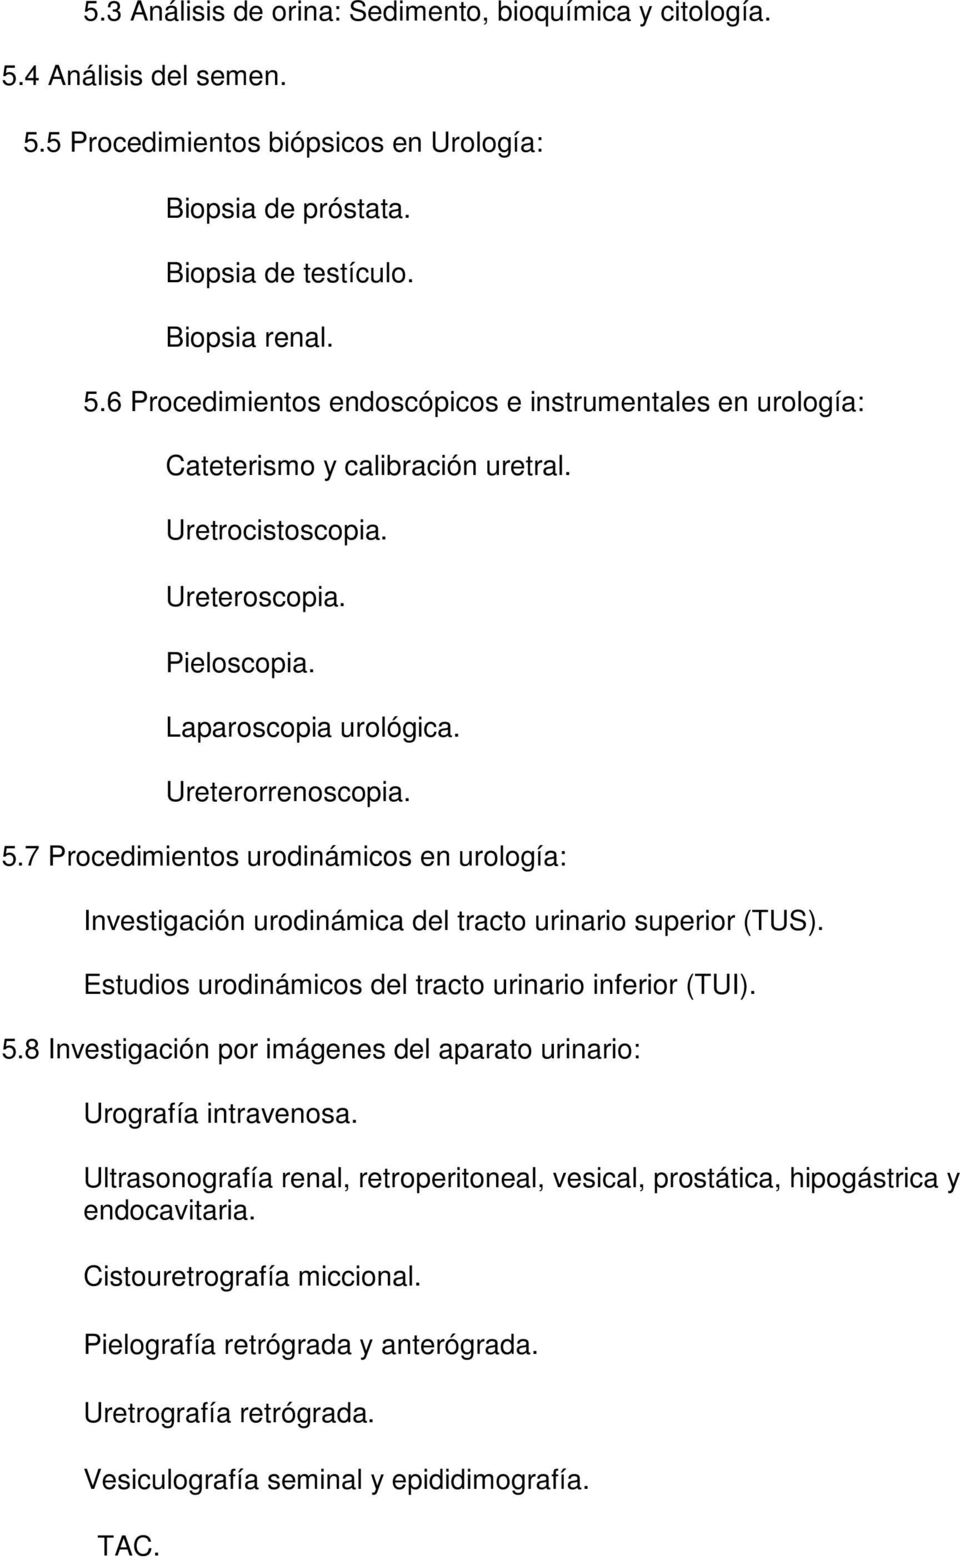 Estudios urodinámicos del tracto urinario inferior (TUI). 5.8 Investigación por imágenes del aparato urinario: Urografía intravenosa.